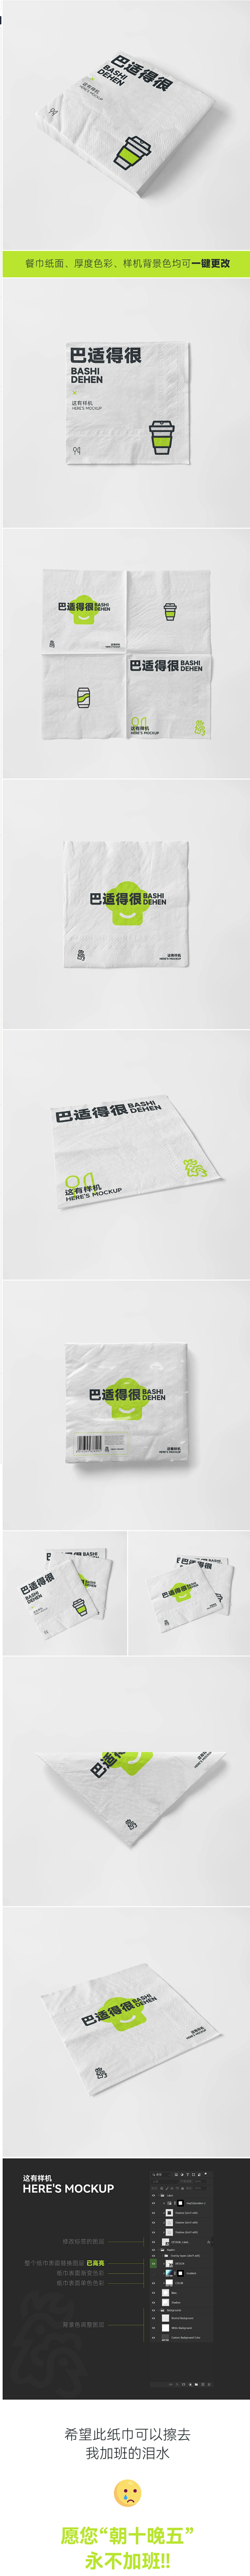 这有样机纸巾餐巾纸奶茶火锅烧烤烤鱼卫生纸...